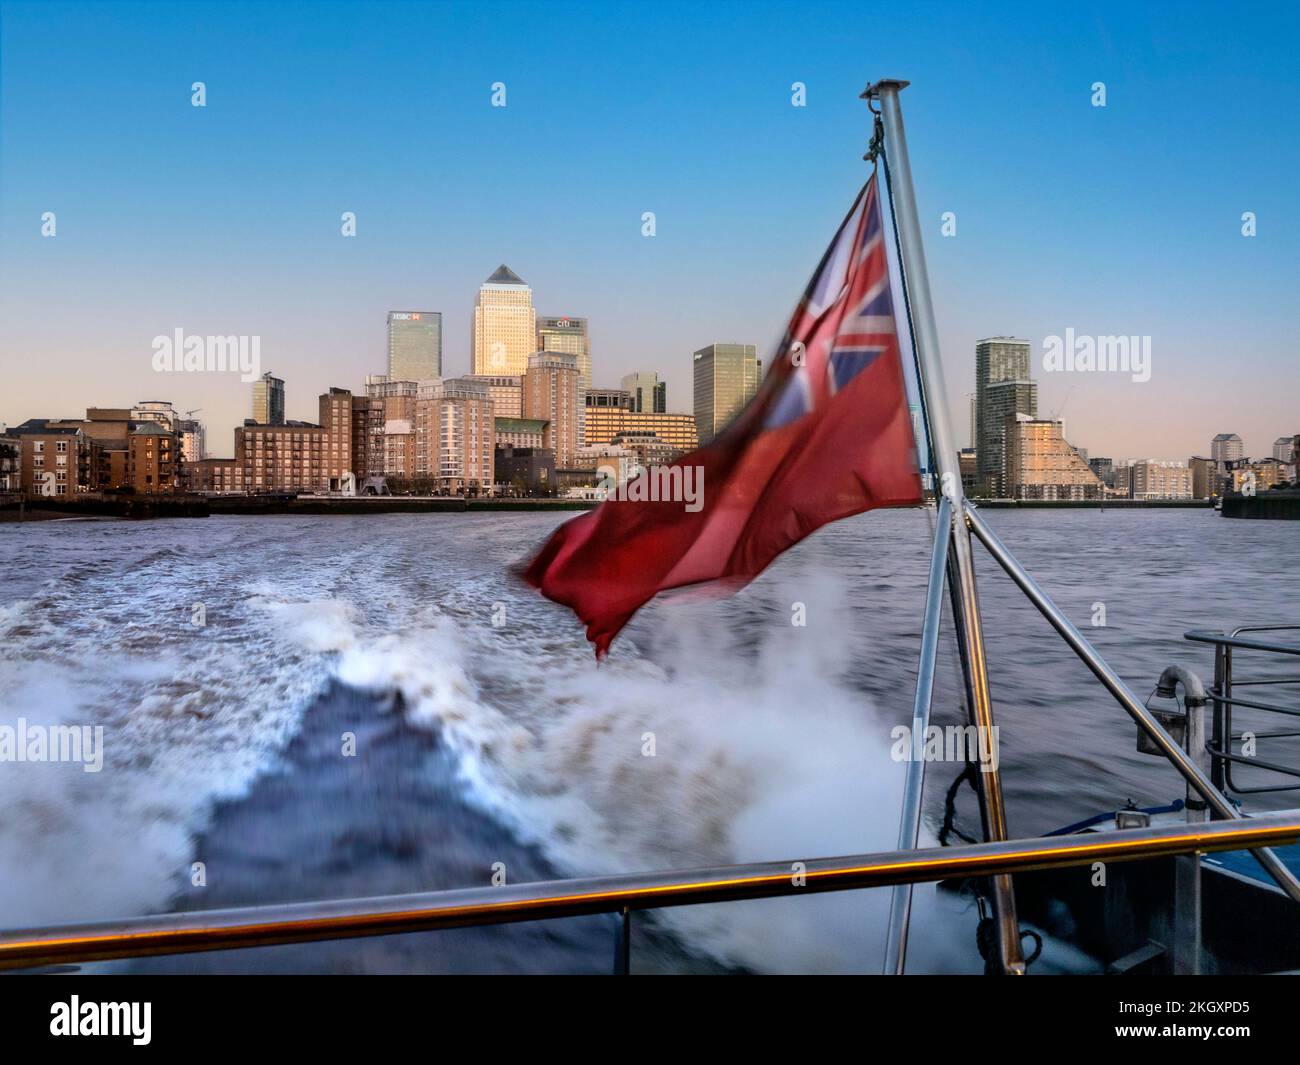 CANARY WHARF Thames Clipper River Boot RB1 verschwommen bei Geschwindigkeit, mit traditioneller roter Fahne von Canary Wharf bei Sonnenuntergang auf der Themse London UK Stockfoto